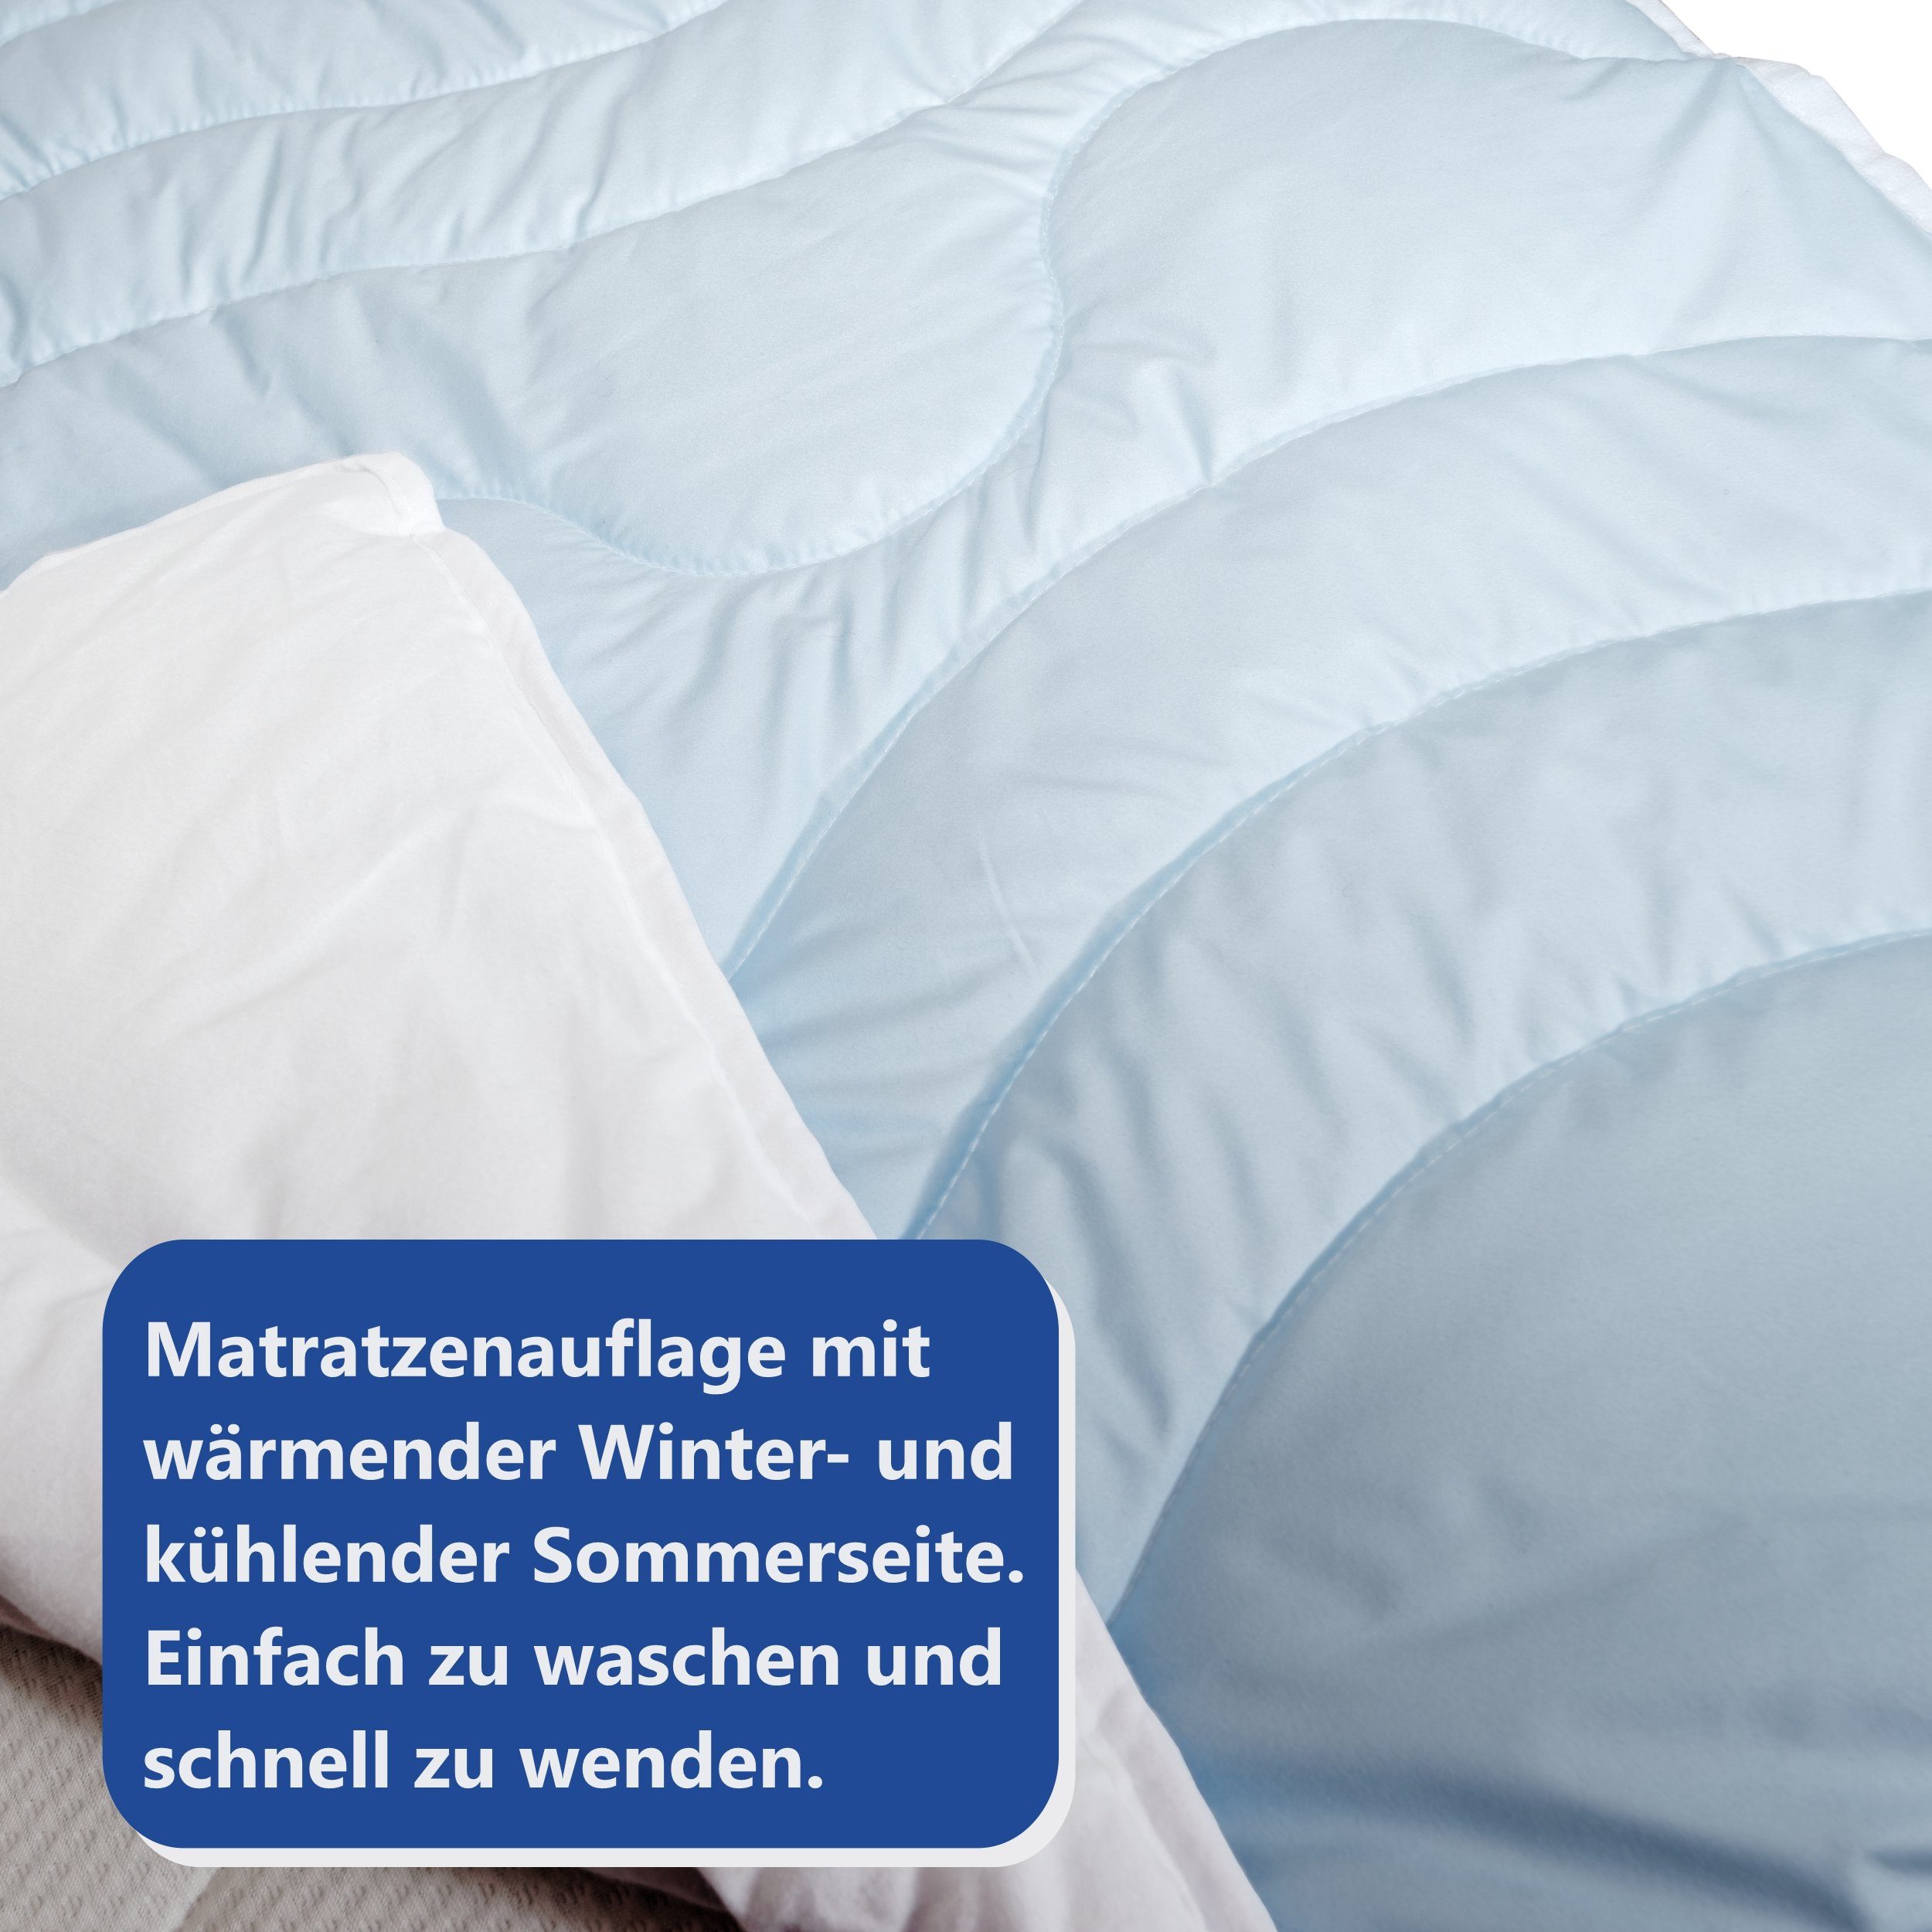 Naturmatratze BeCo Sommer-Winter Unterbett 2 in 1 Matratzenauflage, Beco,  2.5 cm hoch, kuschelweich und angenehm kühlend